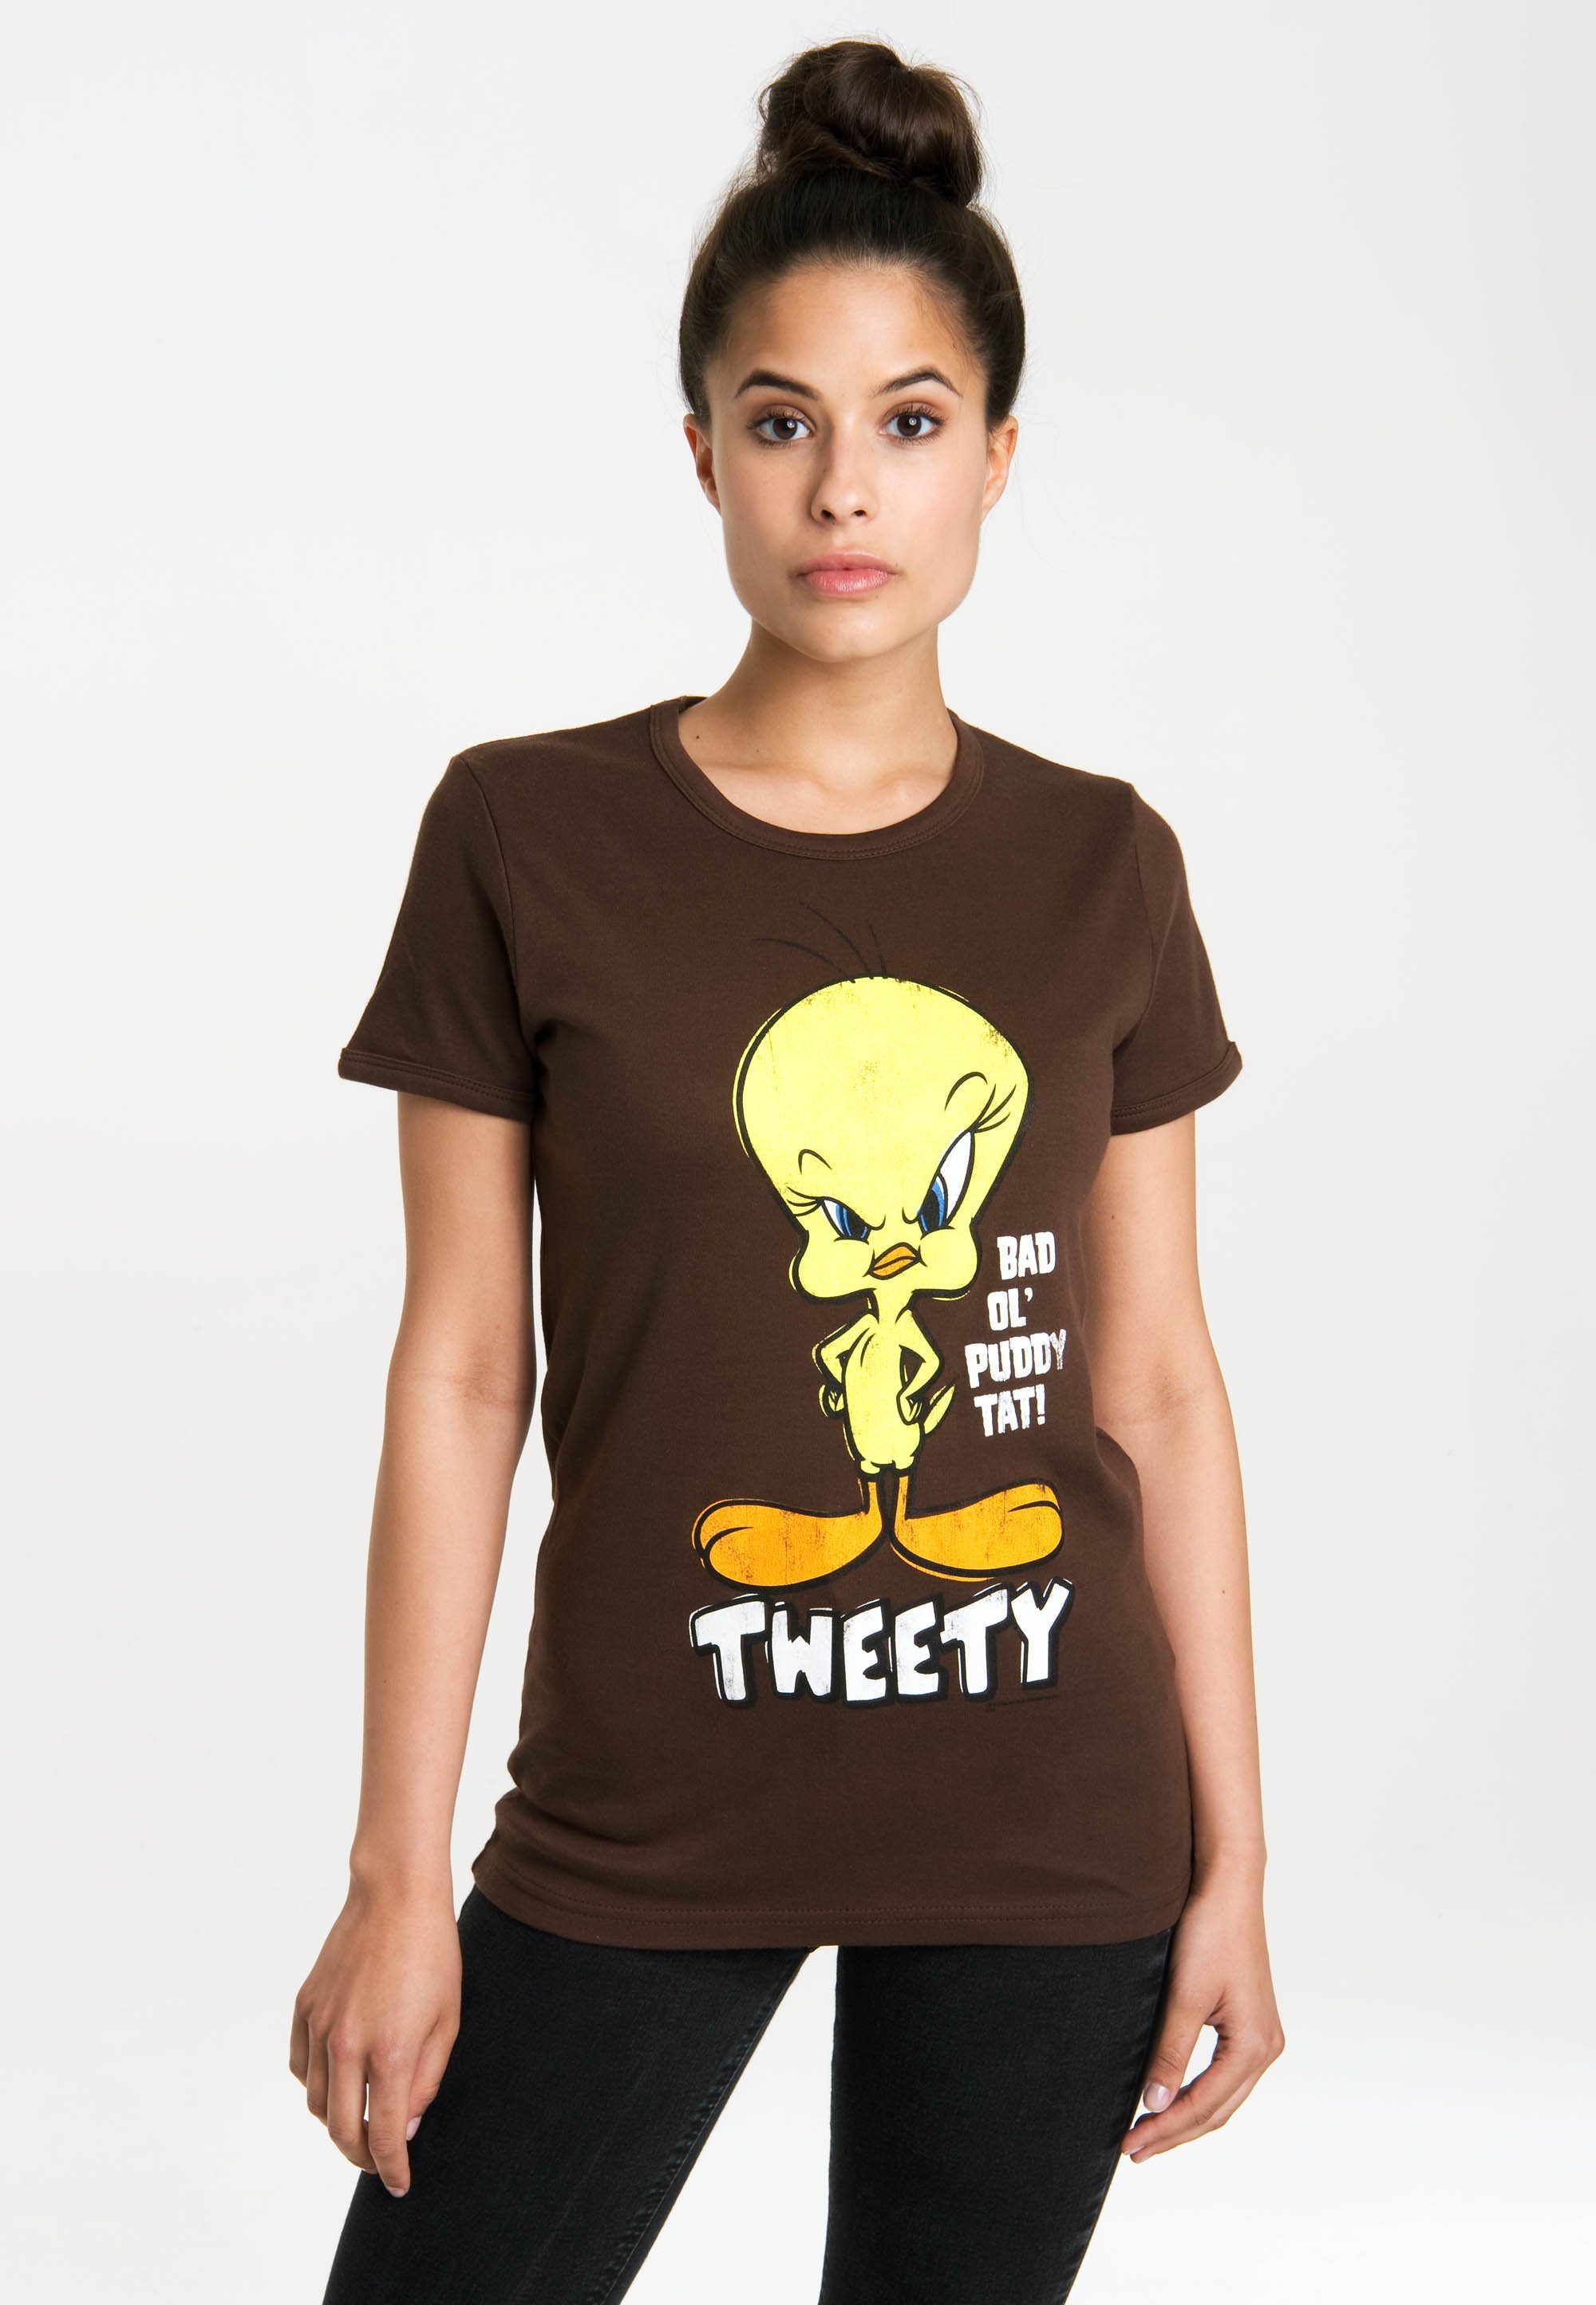 Originaldesign LOGOSHIRT Tweety mit Looney – lizenzierten T-Shirt Tunes